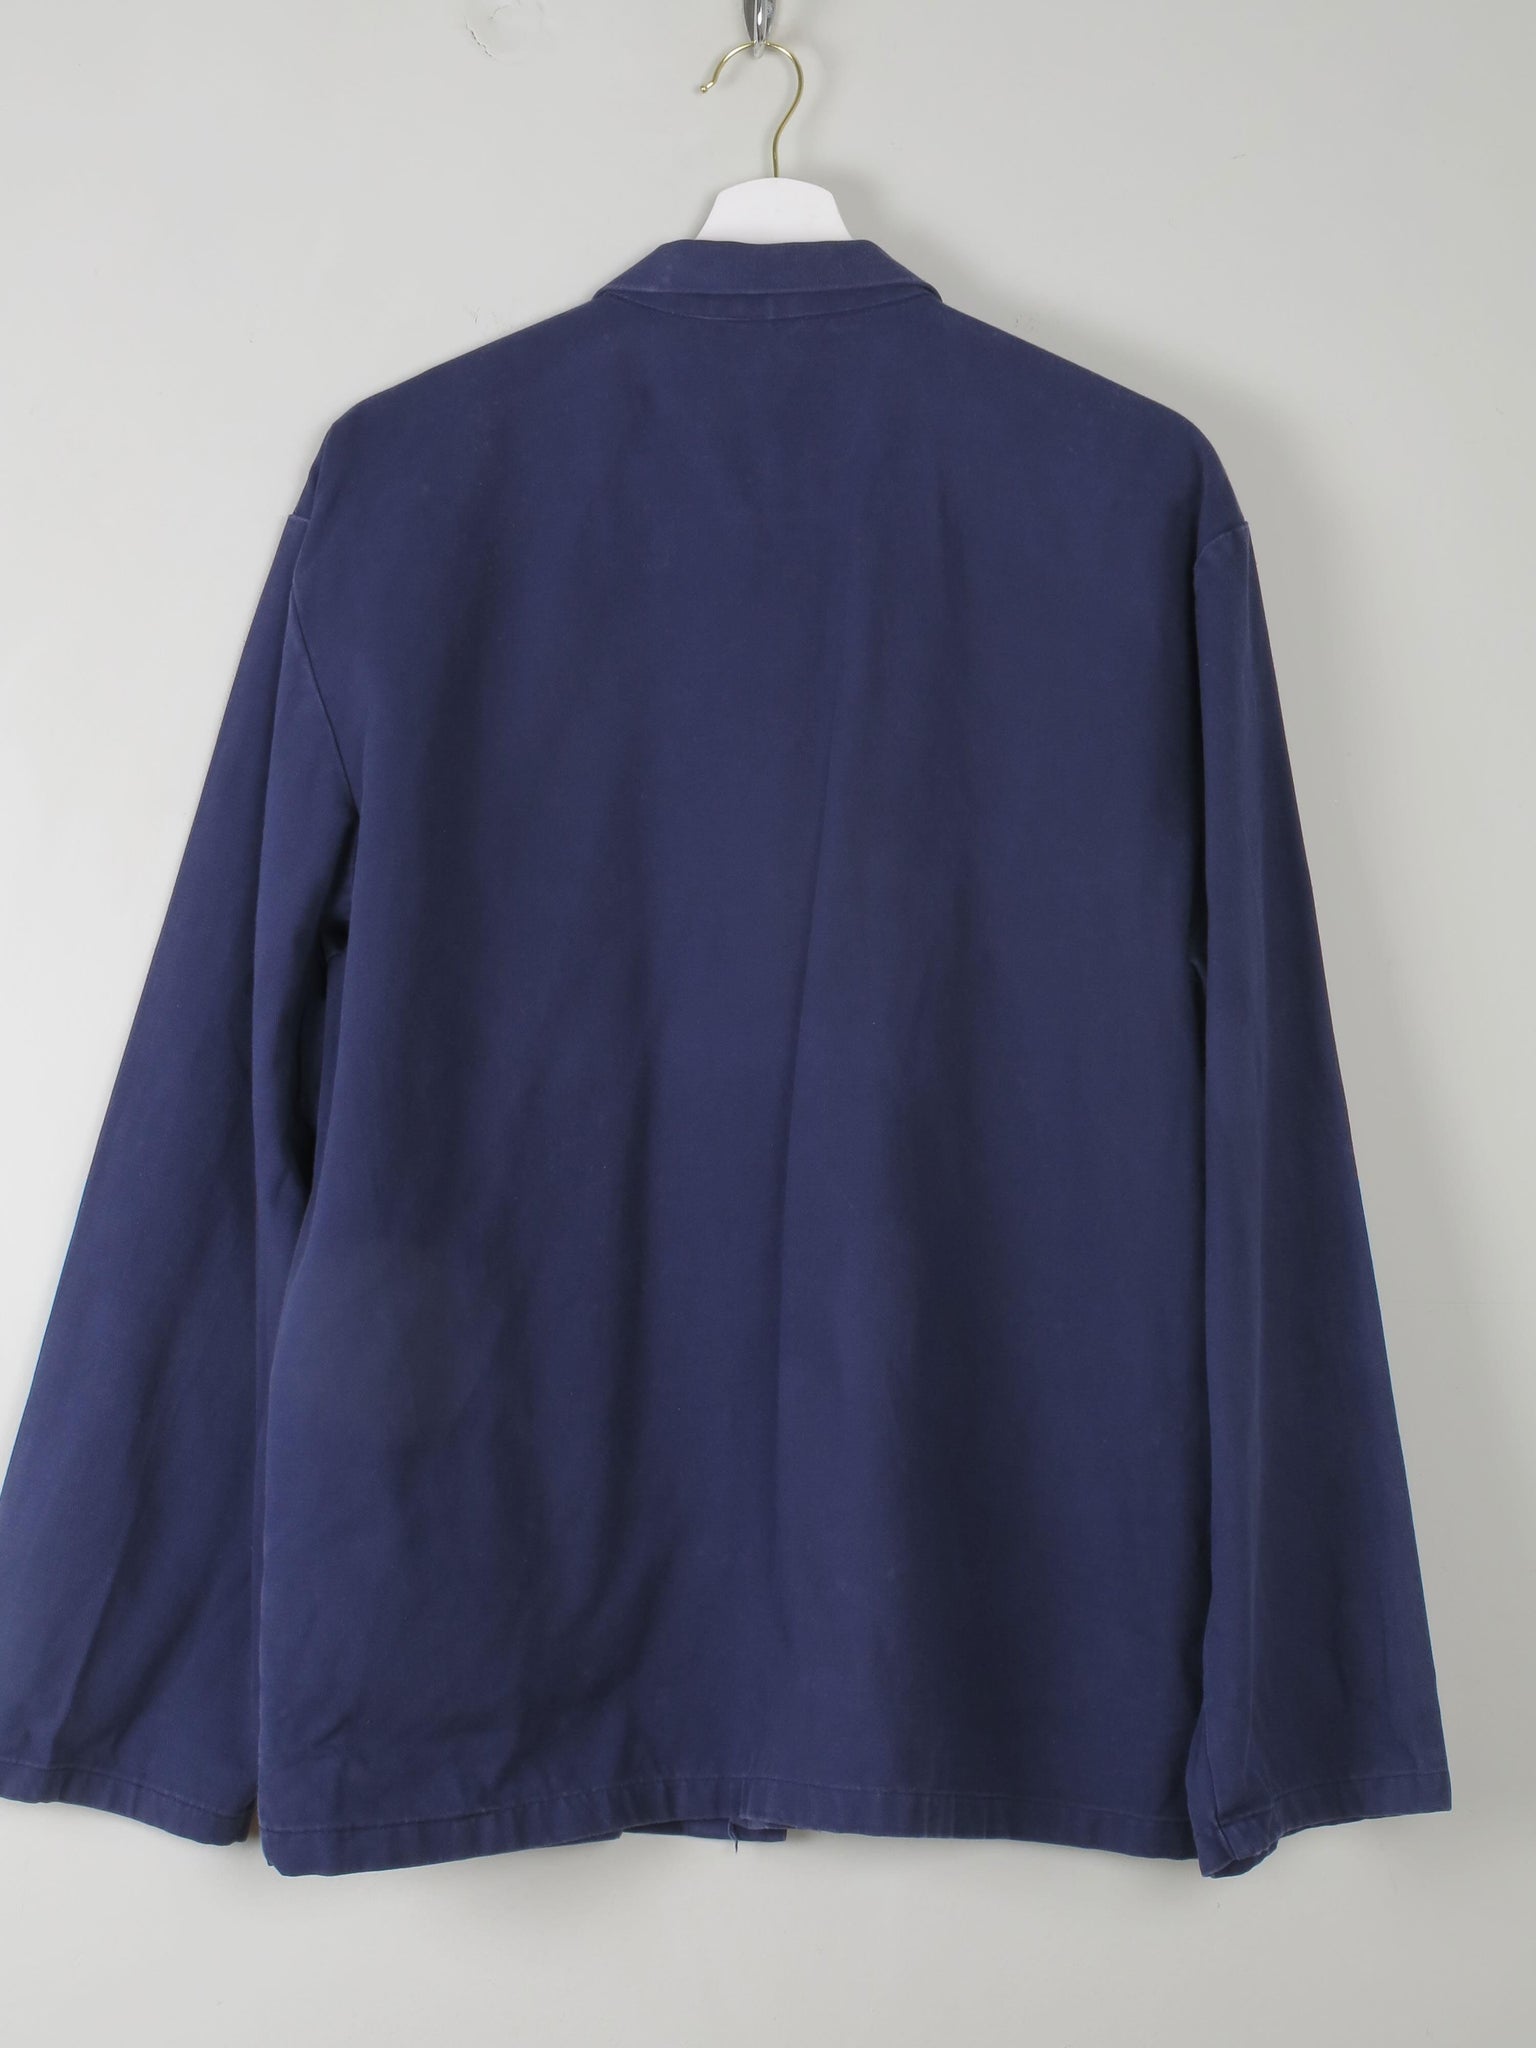 Men's Vintage Blue Work Jacket S/M - The Harlequin